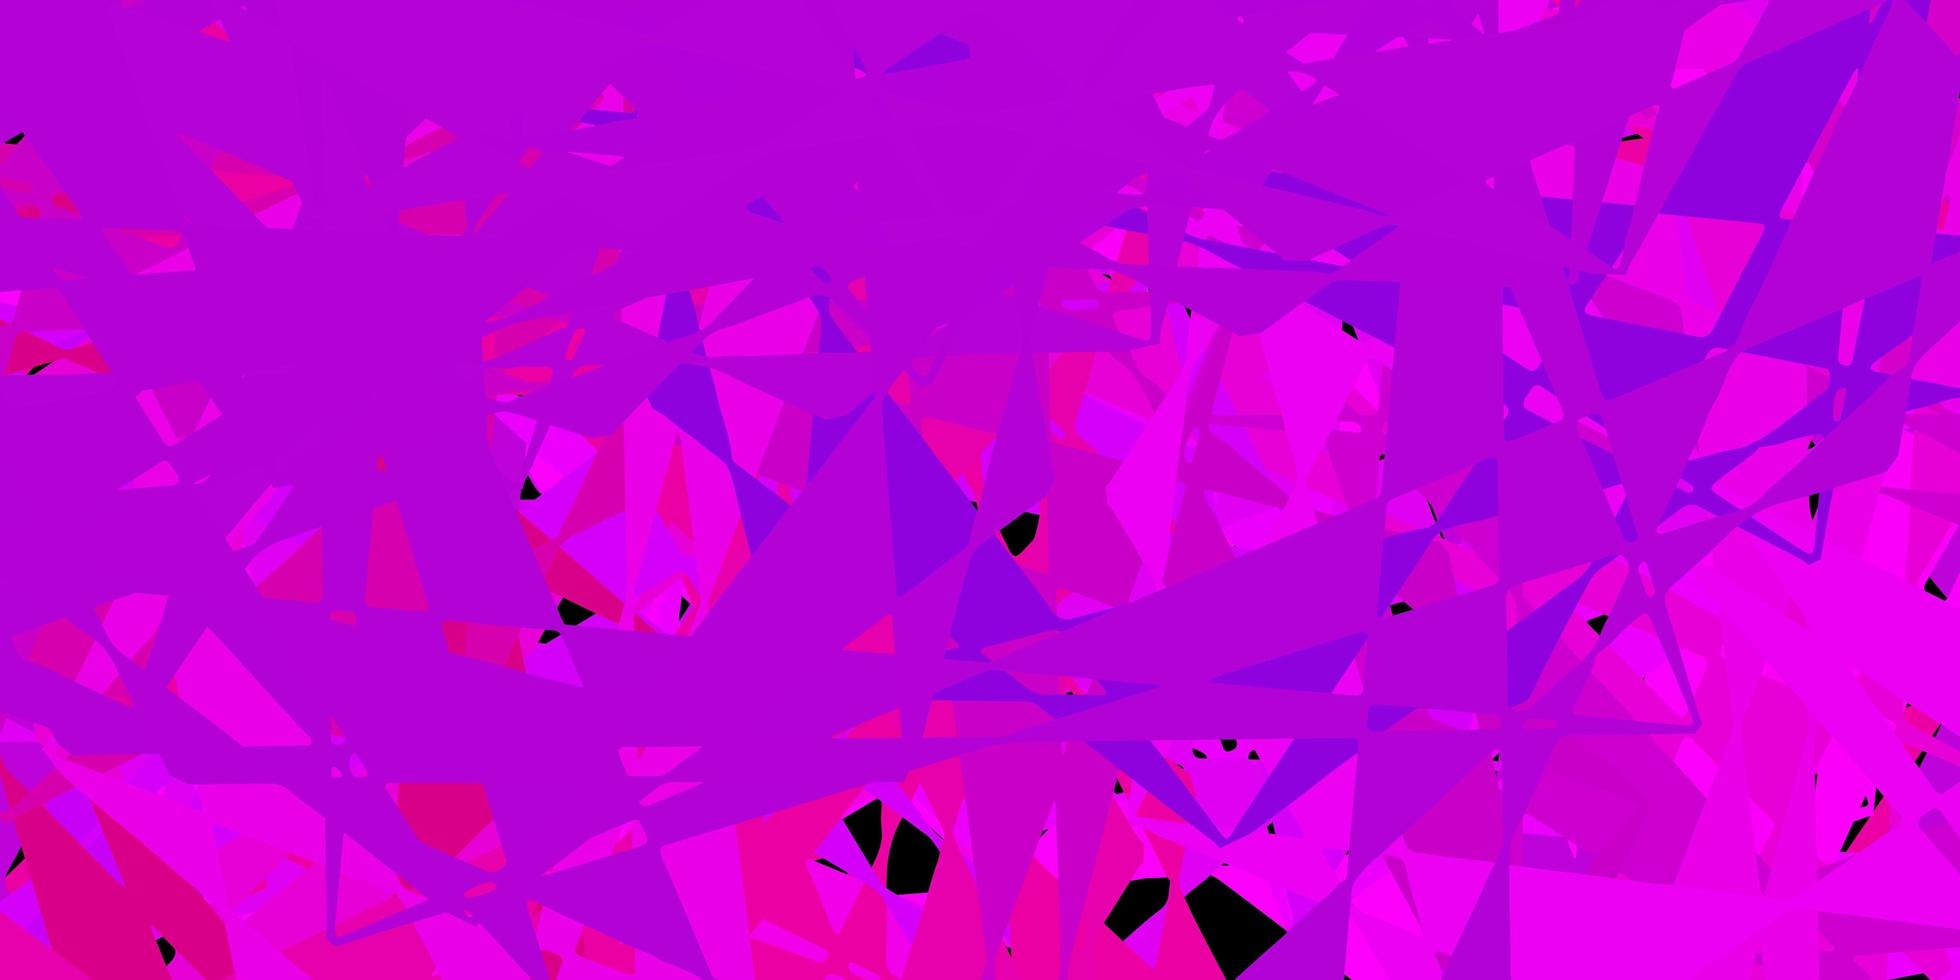 padrão de vetor rosa escuro com formas poligonais.